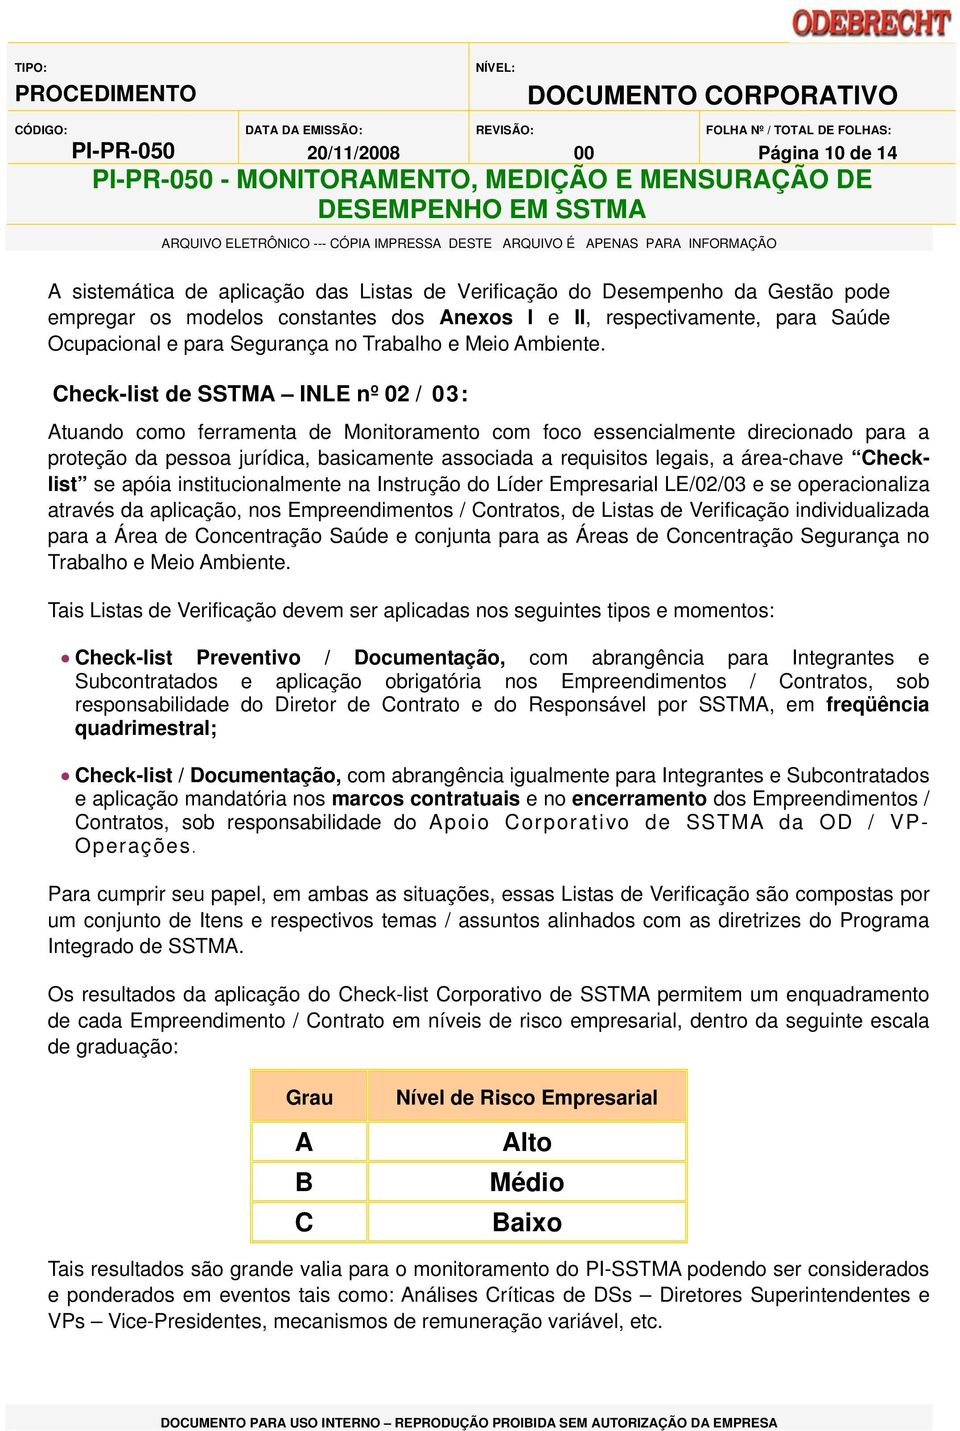 Check-list de SSTMA INLE nº 02 / 03: Atuando como ferramenta de Monitoramento com foco essencialmente direcionado para a proteção da pessoa jurídica, basicamente associada a requisitos legais, a